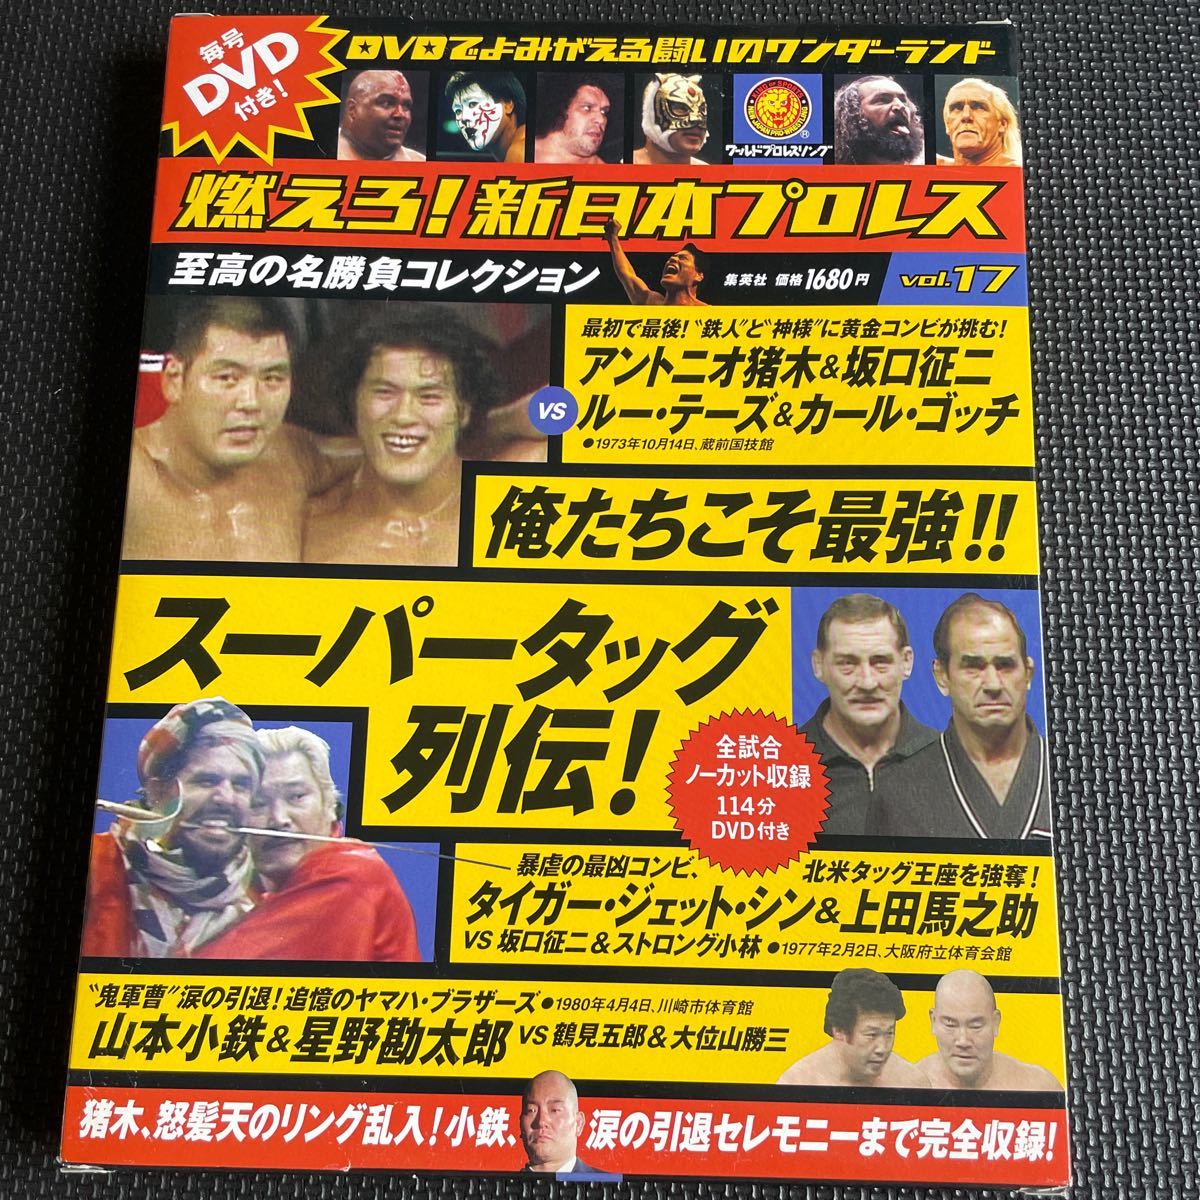 スポーツ雑誌 付録付) 燃えろ! 新日本プロレス全国版 17 DVD 冊子_画像1